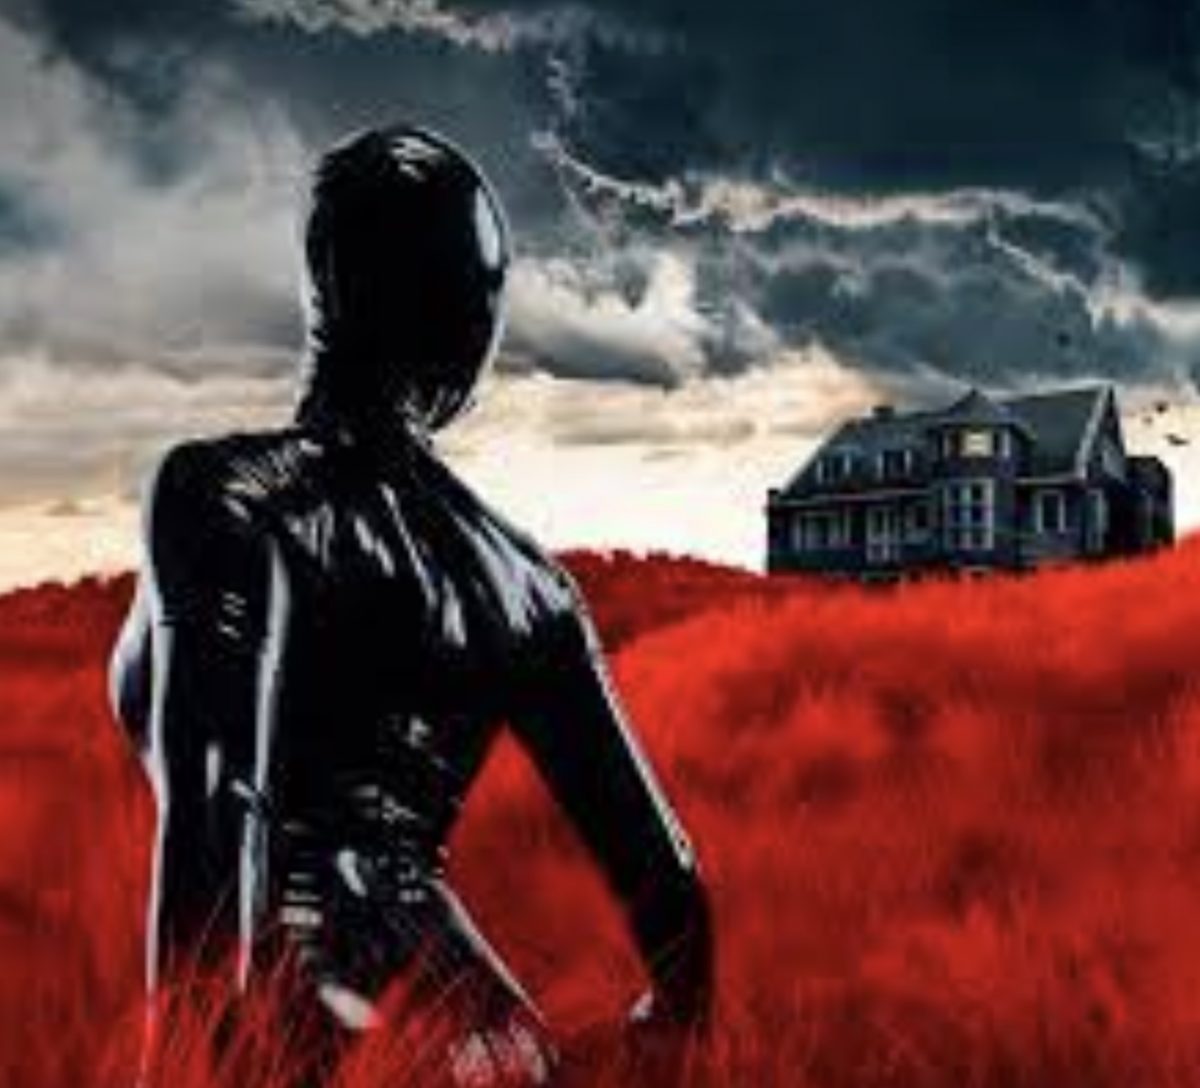 American Horror Story Season 10 Episode 4 Release Date